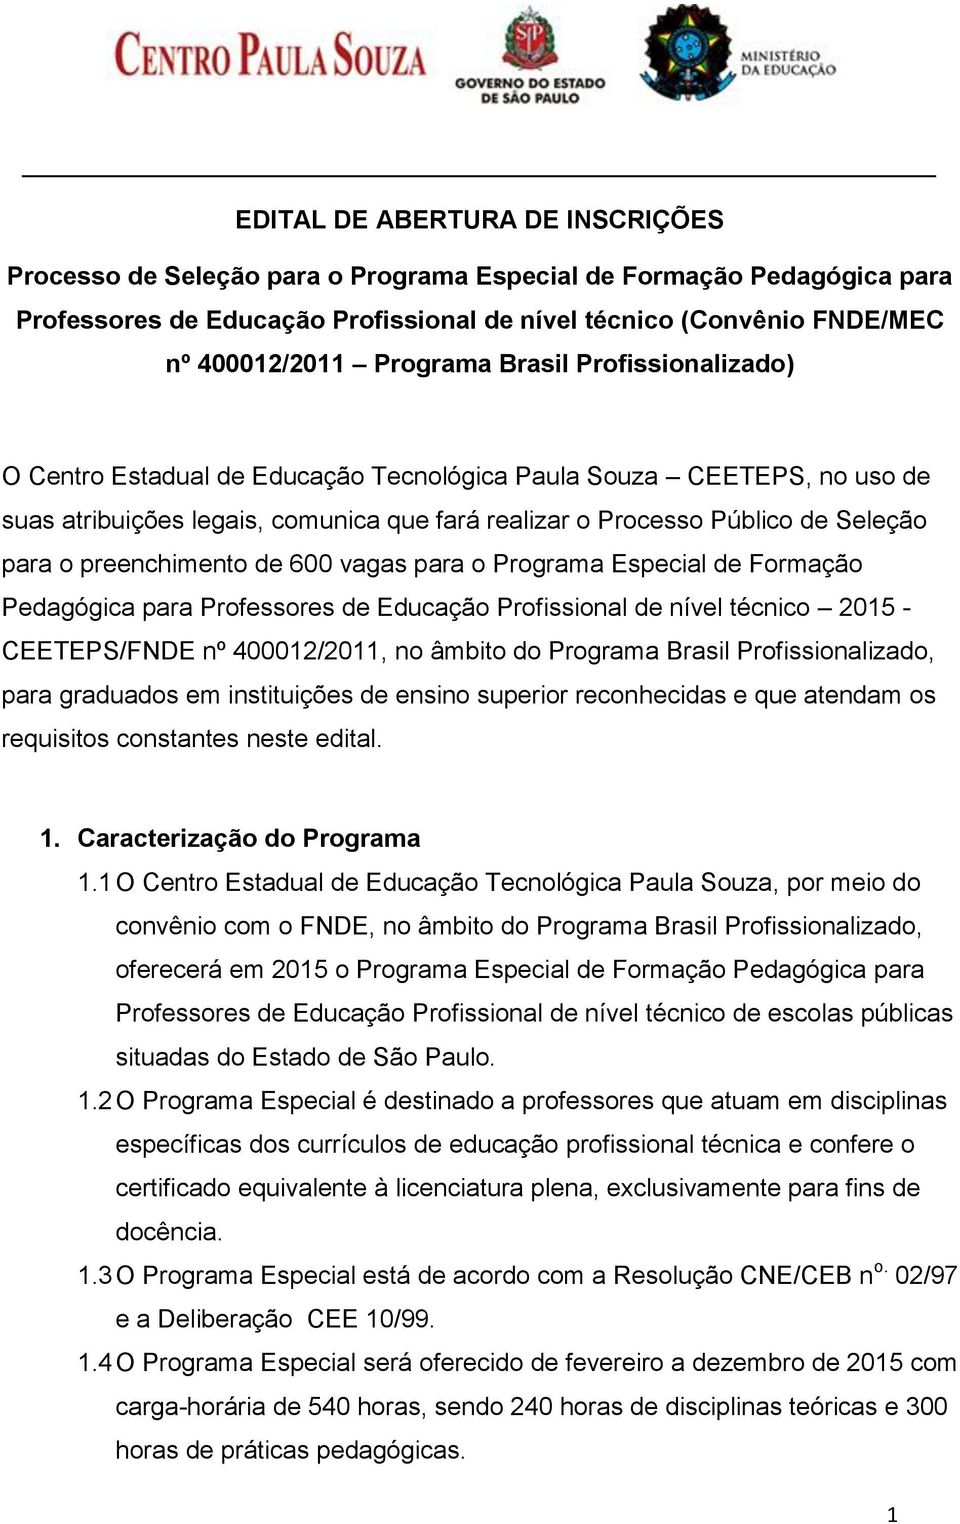 preenchimento de 600 vagas para o Programa Especial de Formação Pedagógica para Professores de Educação Profissional de nível técnico 2015 - CEETEPS/FNDE nº 400012/2011, no âmbito do Programa Brasil